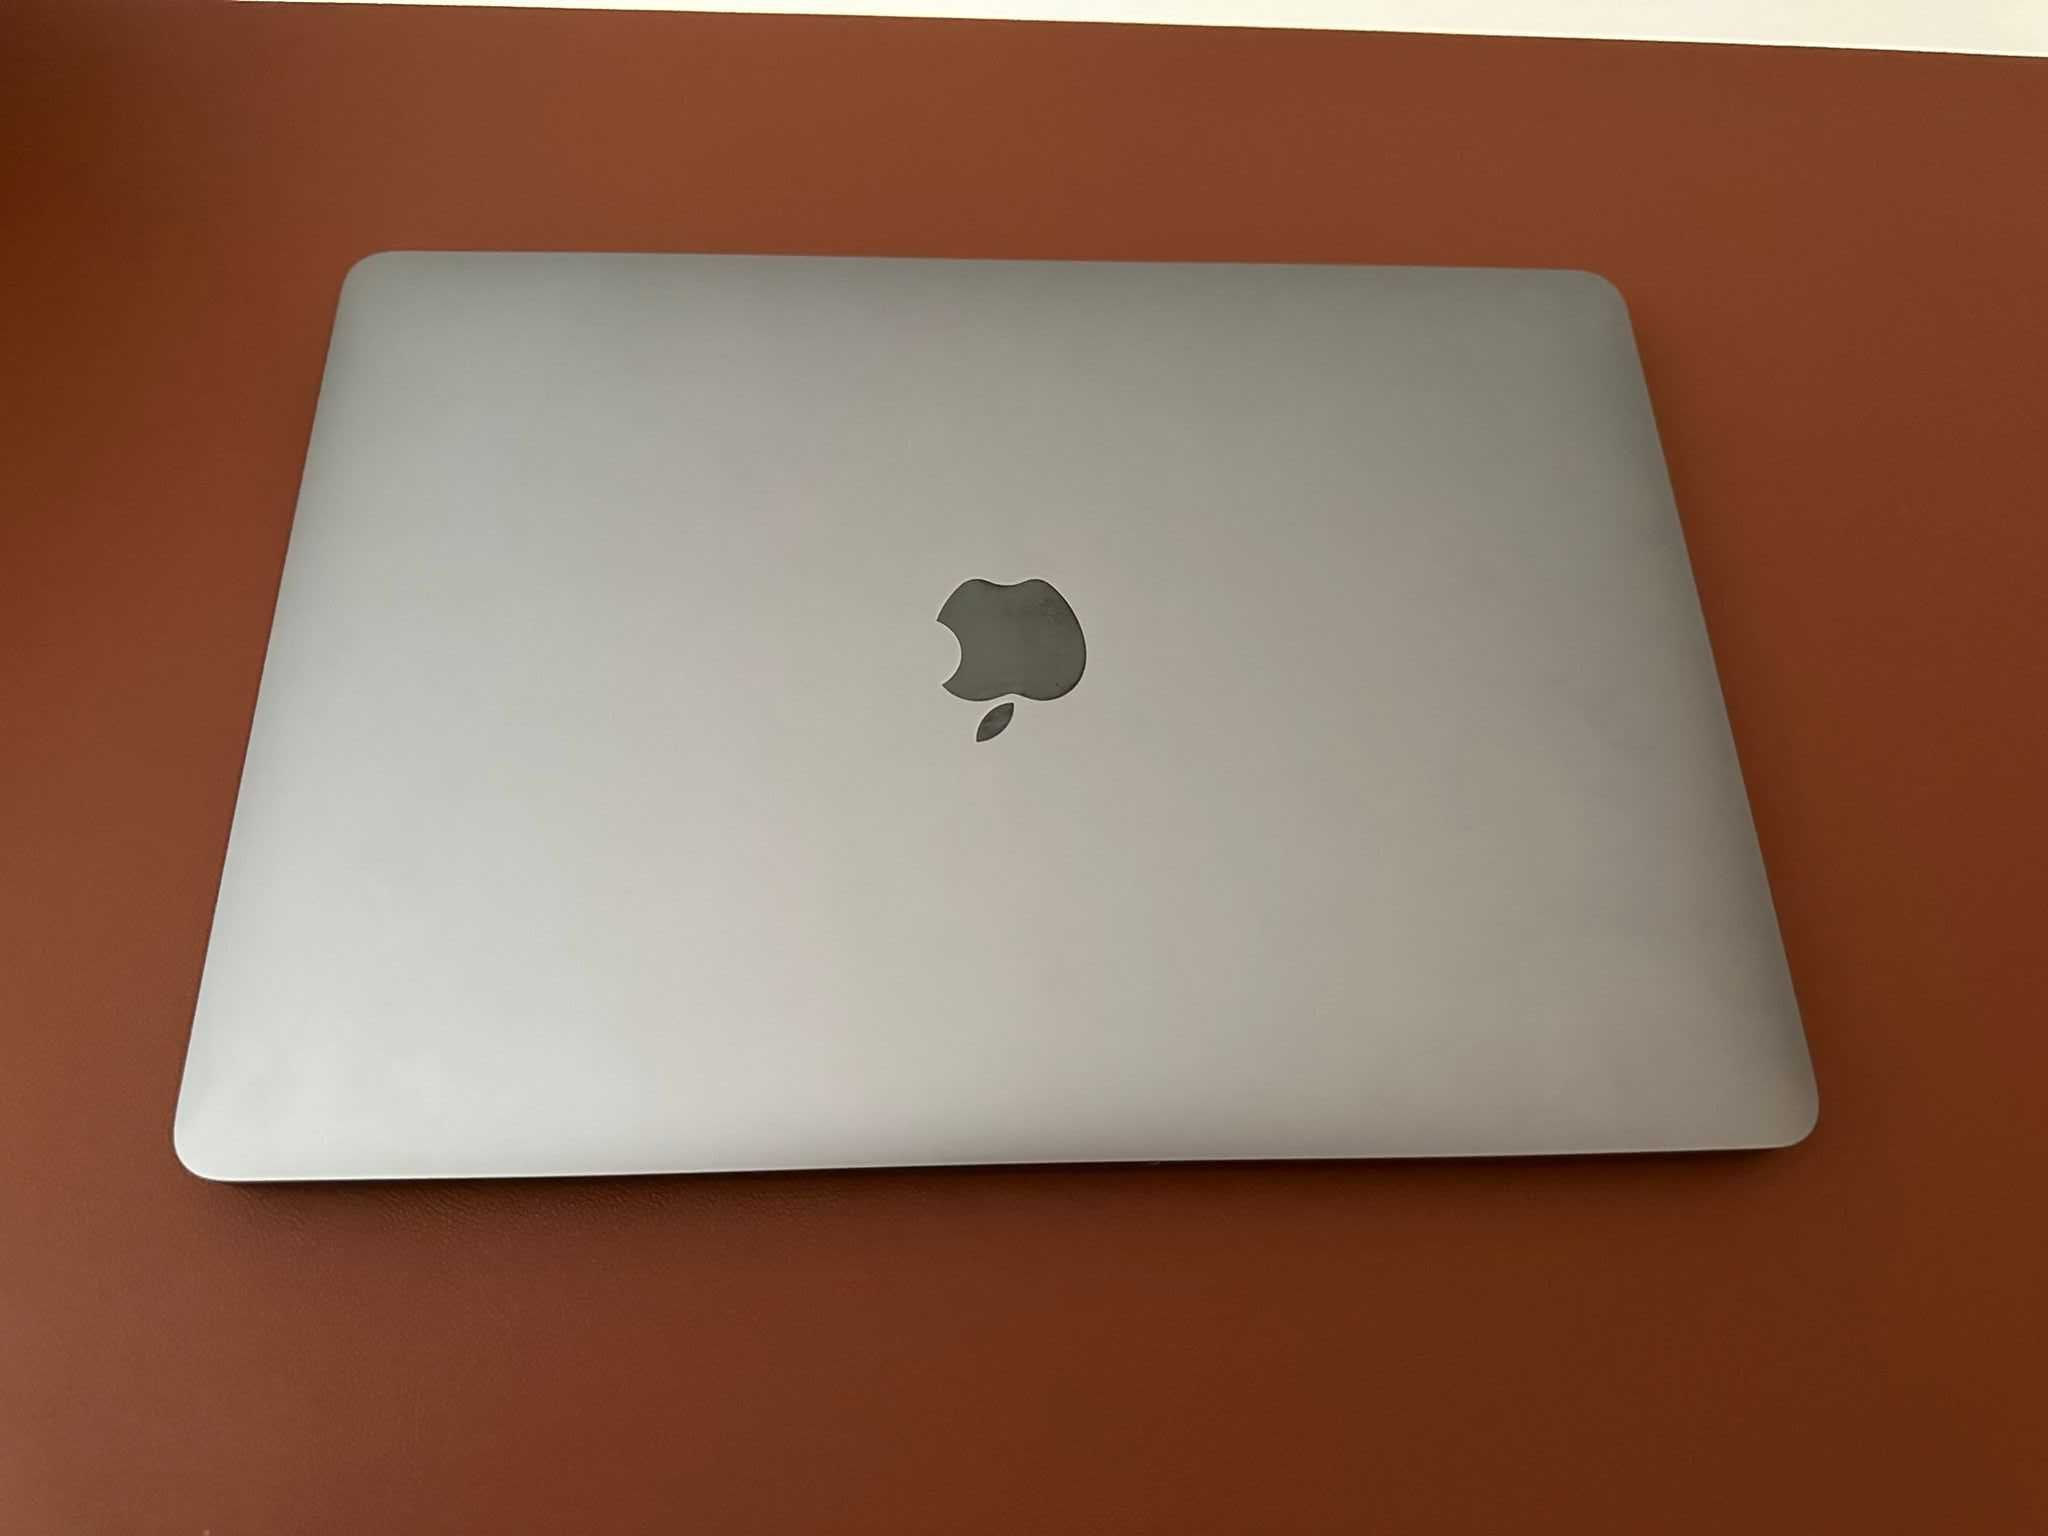 MackBook Pro 13 polegadas com chip M1 (16GB de memória unificada)